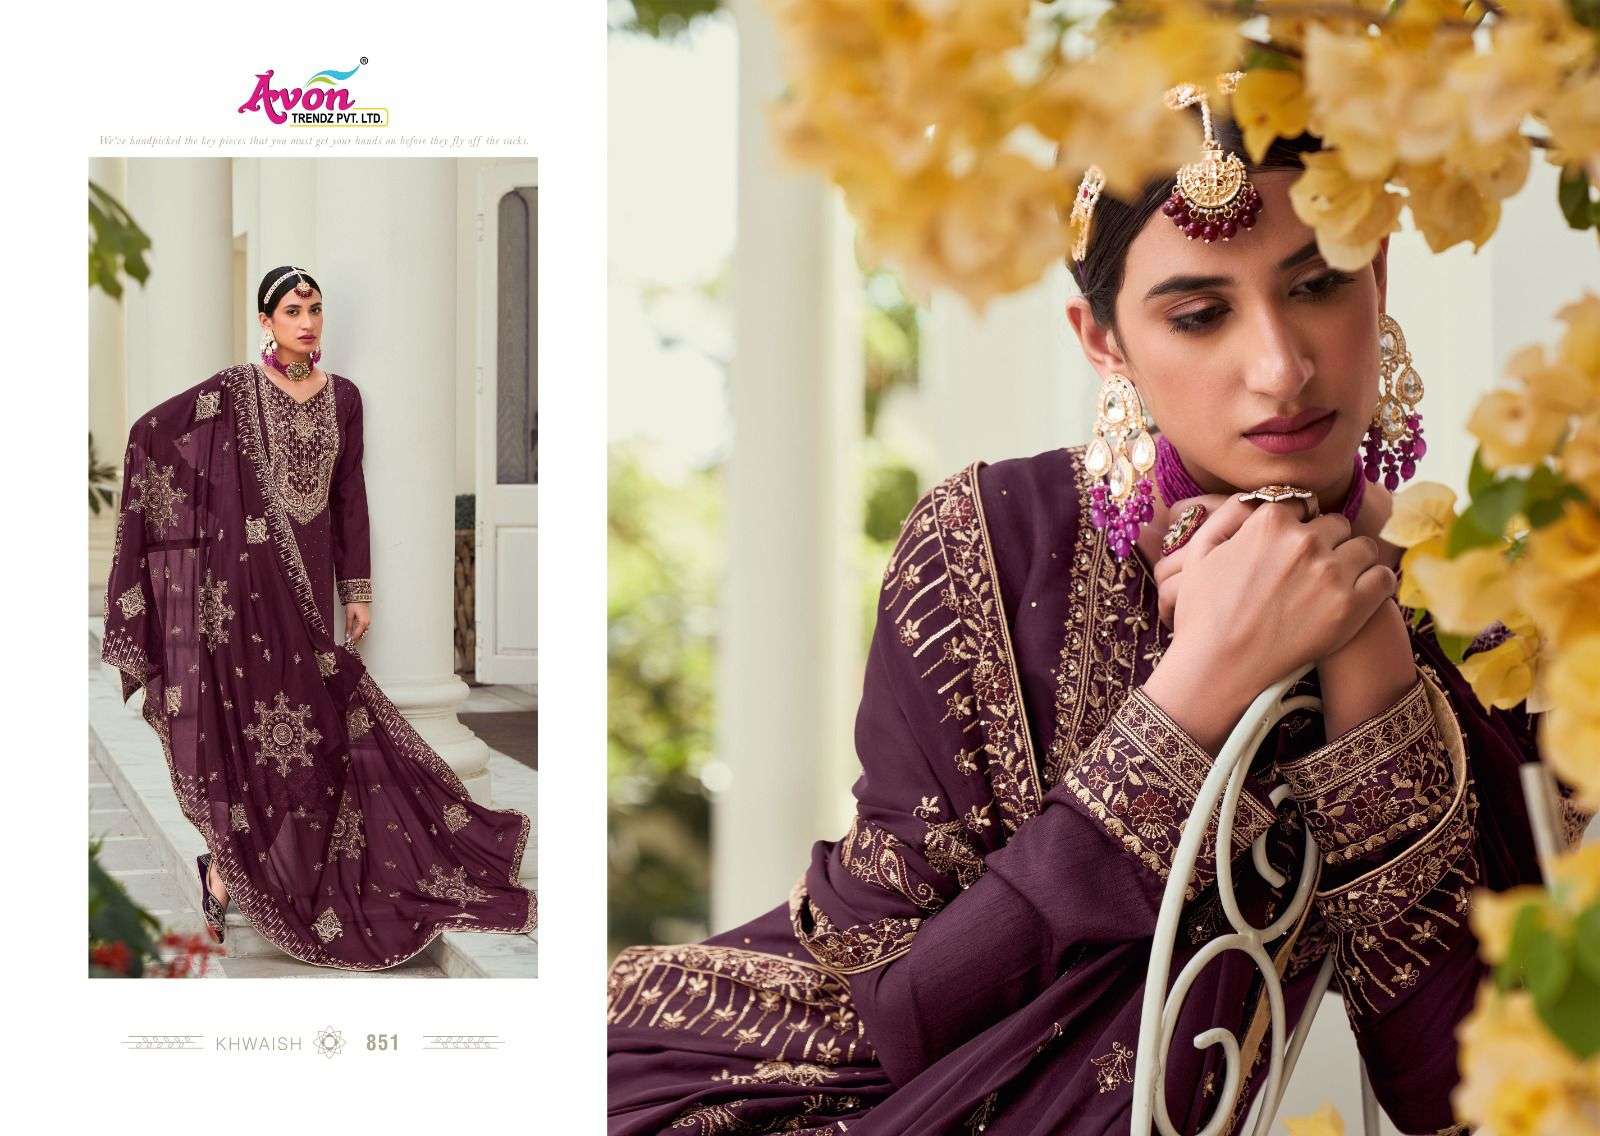 avon trendz khwaish 850-855 series latest designer party wear salwar suits catalogue design 2023